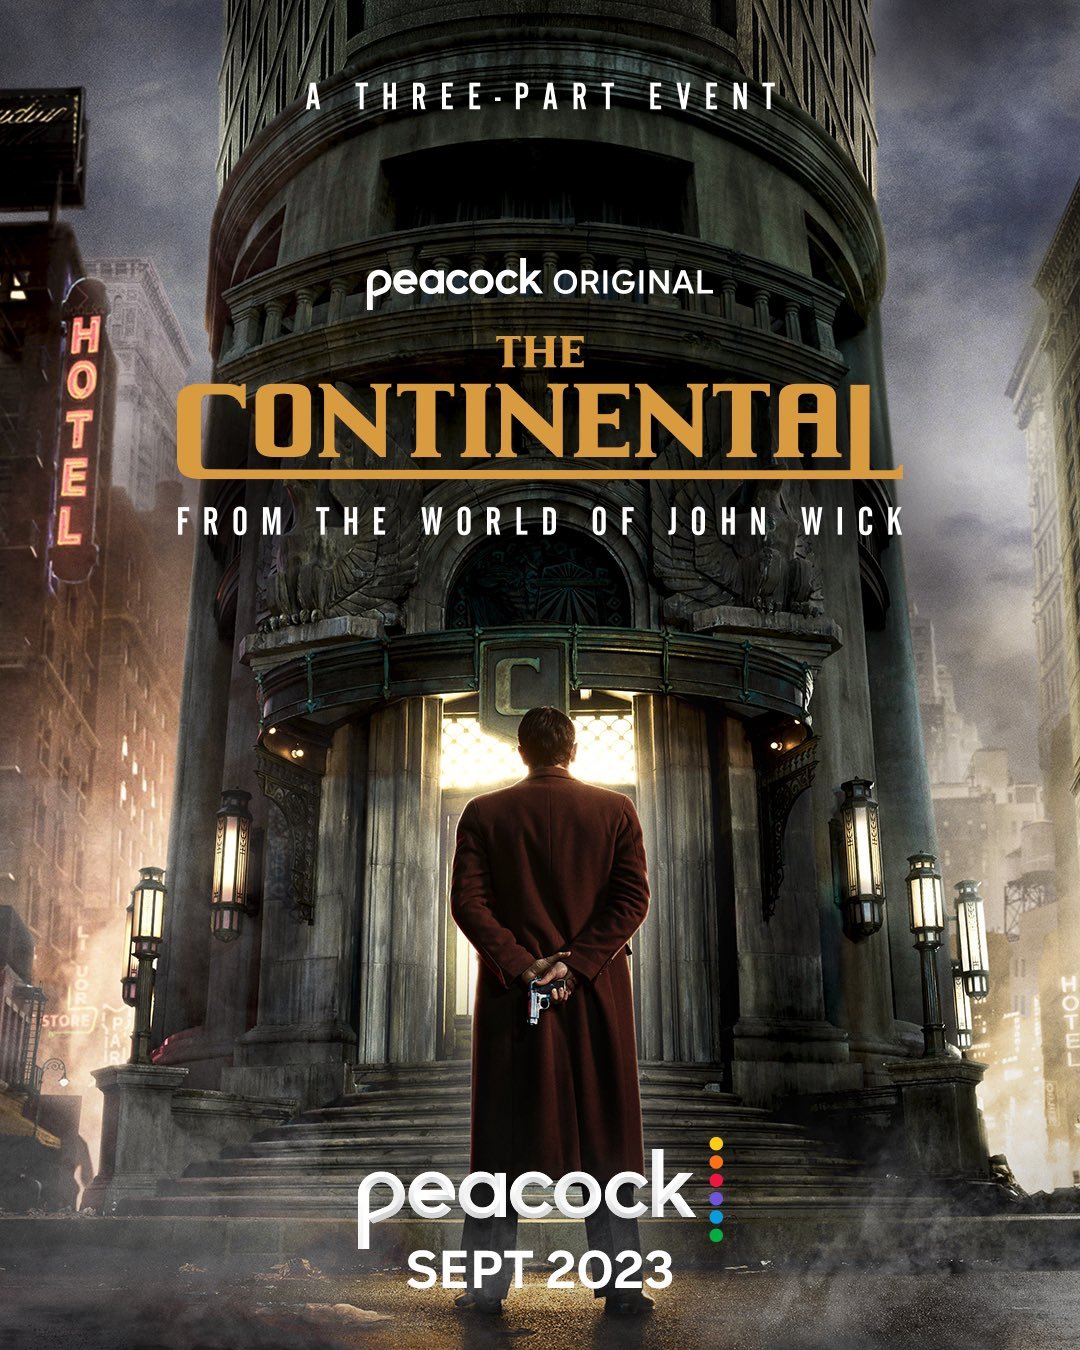 De Volta ao Jogo  John Wick retorna ao hotel Continental em novo clipe -  Cinema com Rapadura